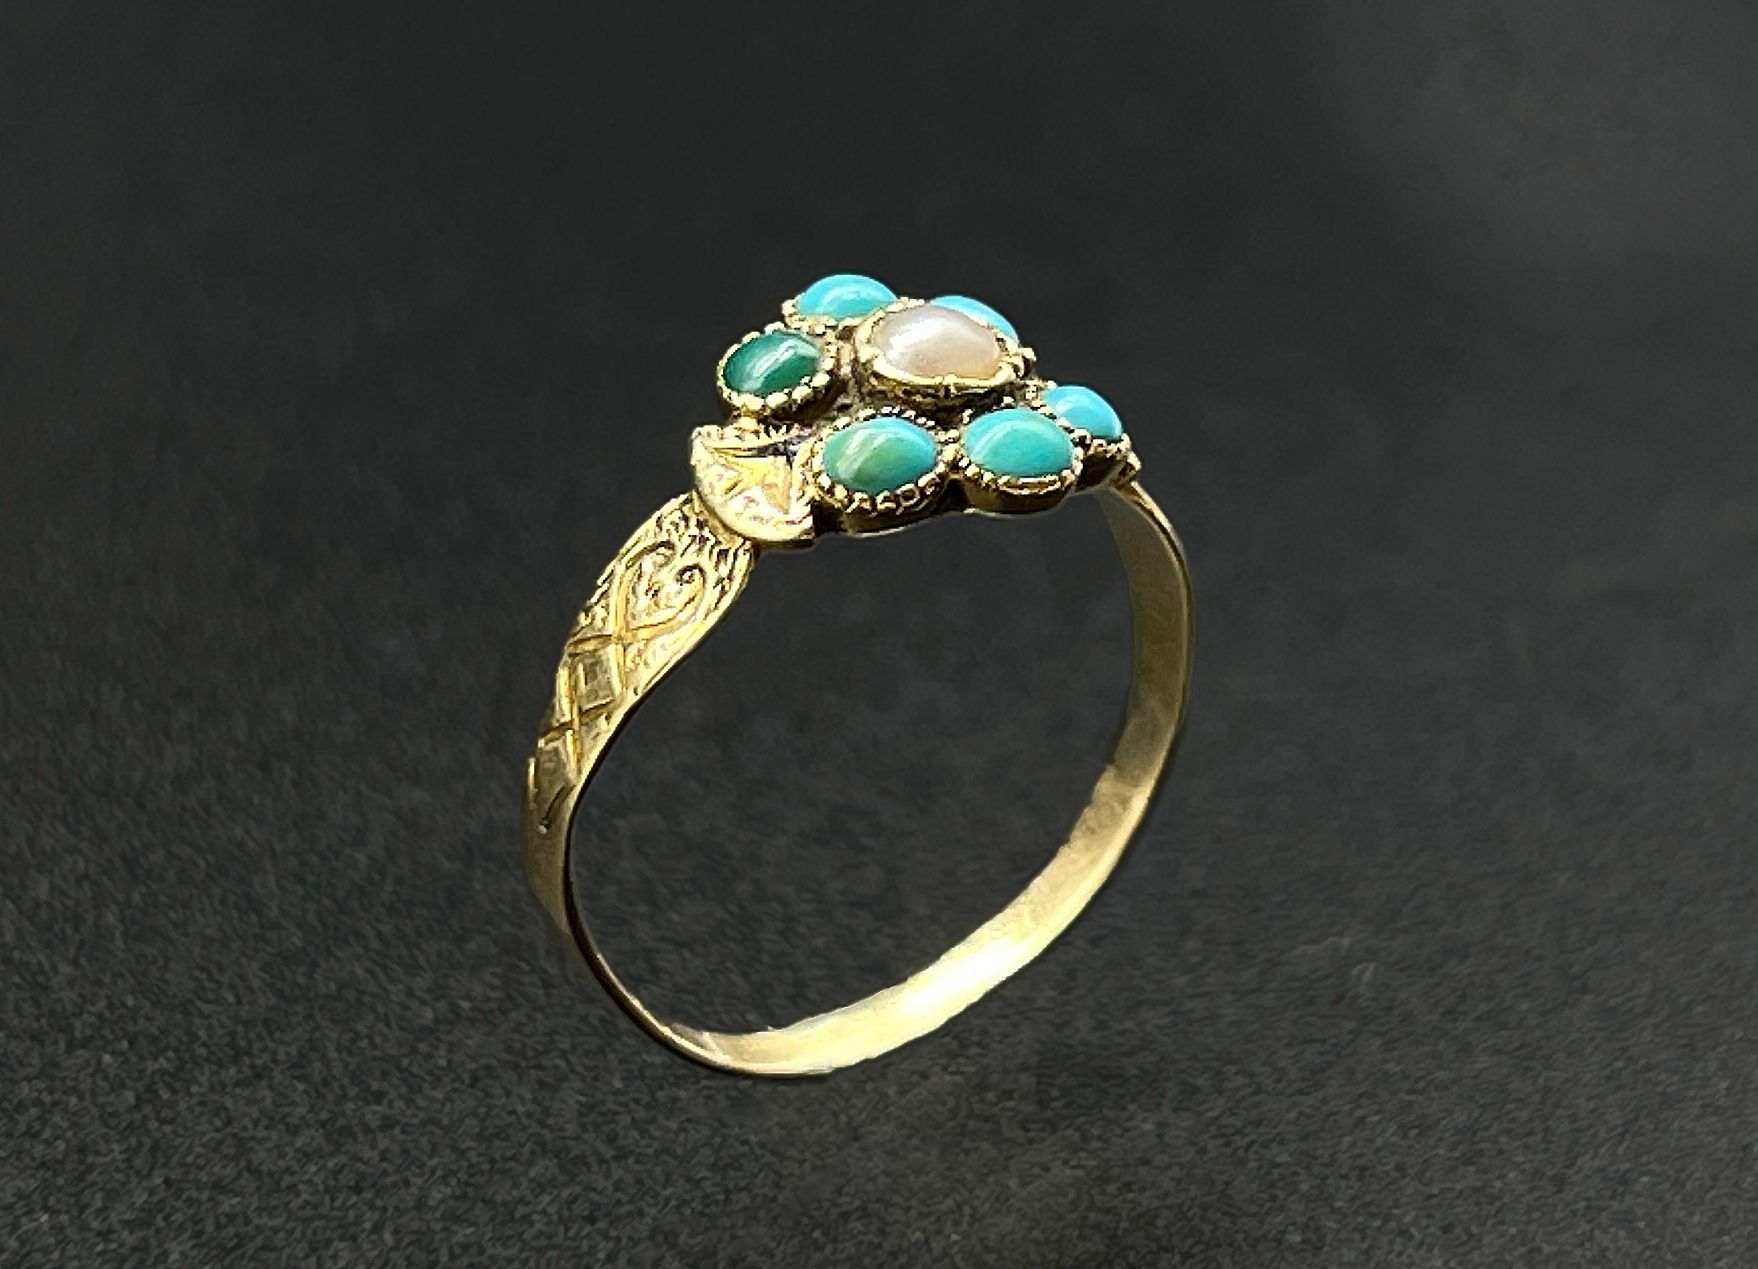 Null 黄金（750）戒指，中心是由小圆绿松石凸圆形组成的风格化花朵设计，中心是一颗珍珠。

雕刻的装饰。

毛重：1.8克。

略有意外，有一颗绿松石已经绝&hellip;